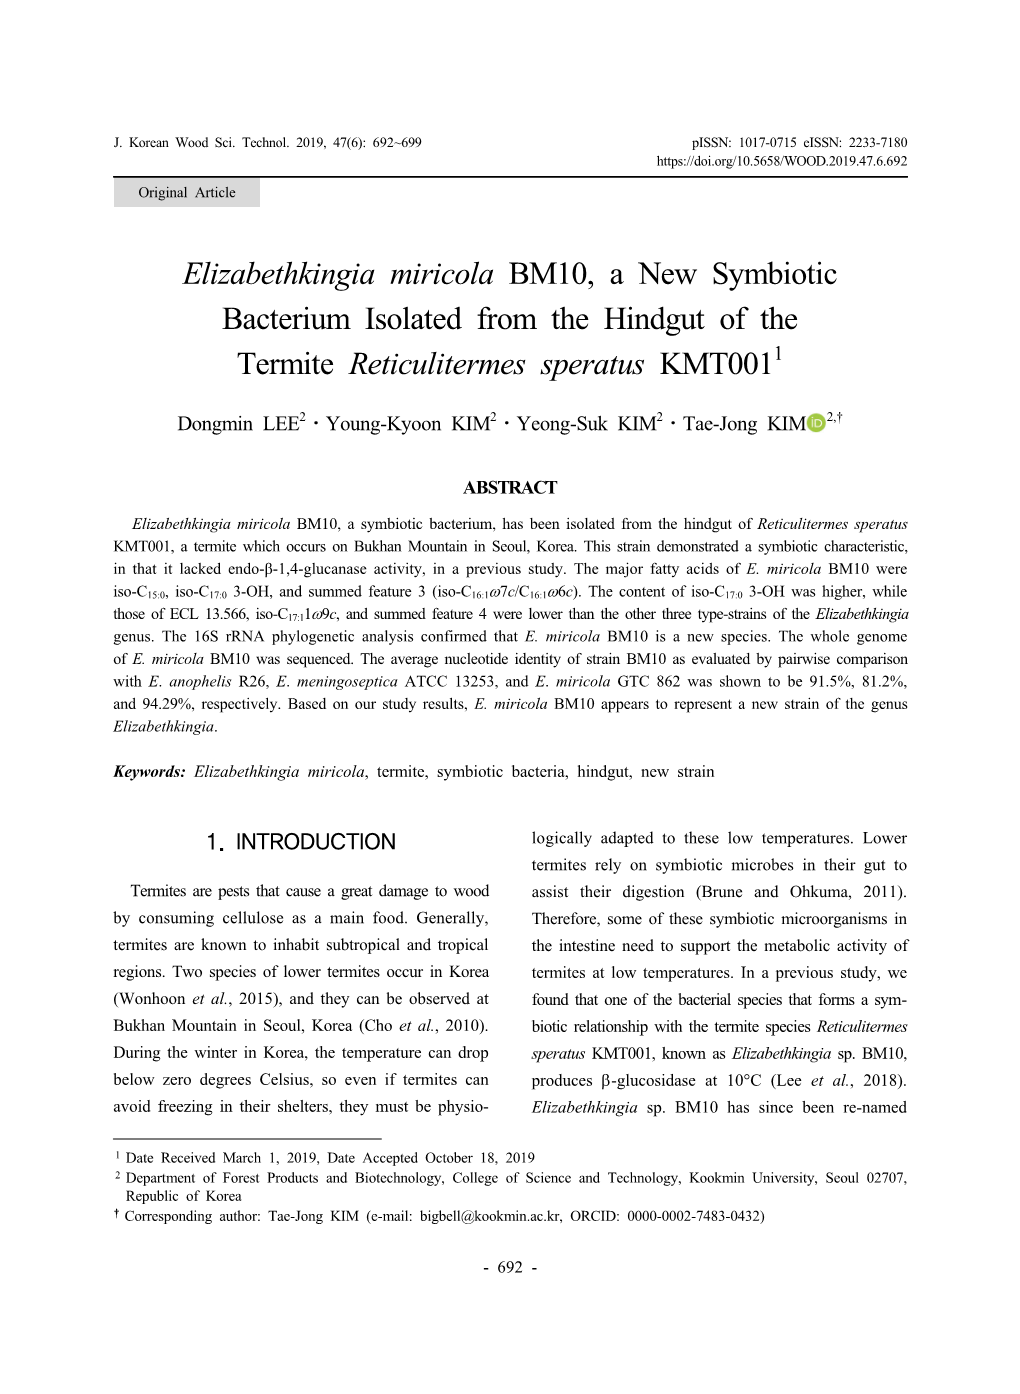 Elizabethkingia Miricola BM10, a New Symbiotic Bacterium Isolated from the Hindgut of the Termite Reticulitermes Speratus KMT0011